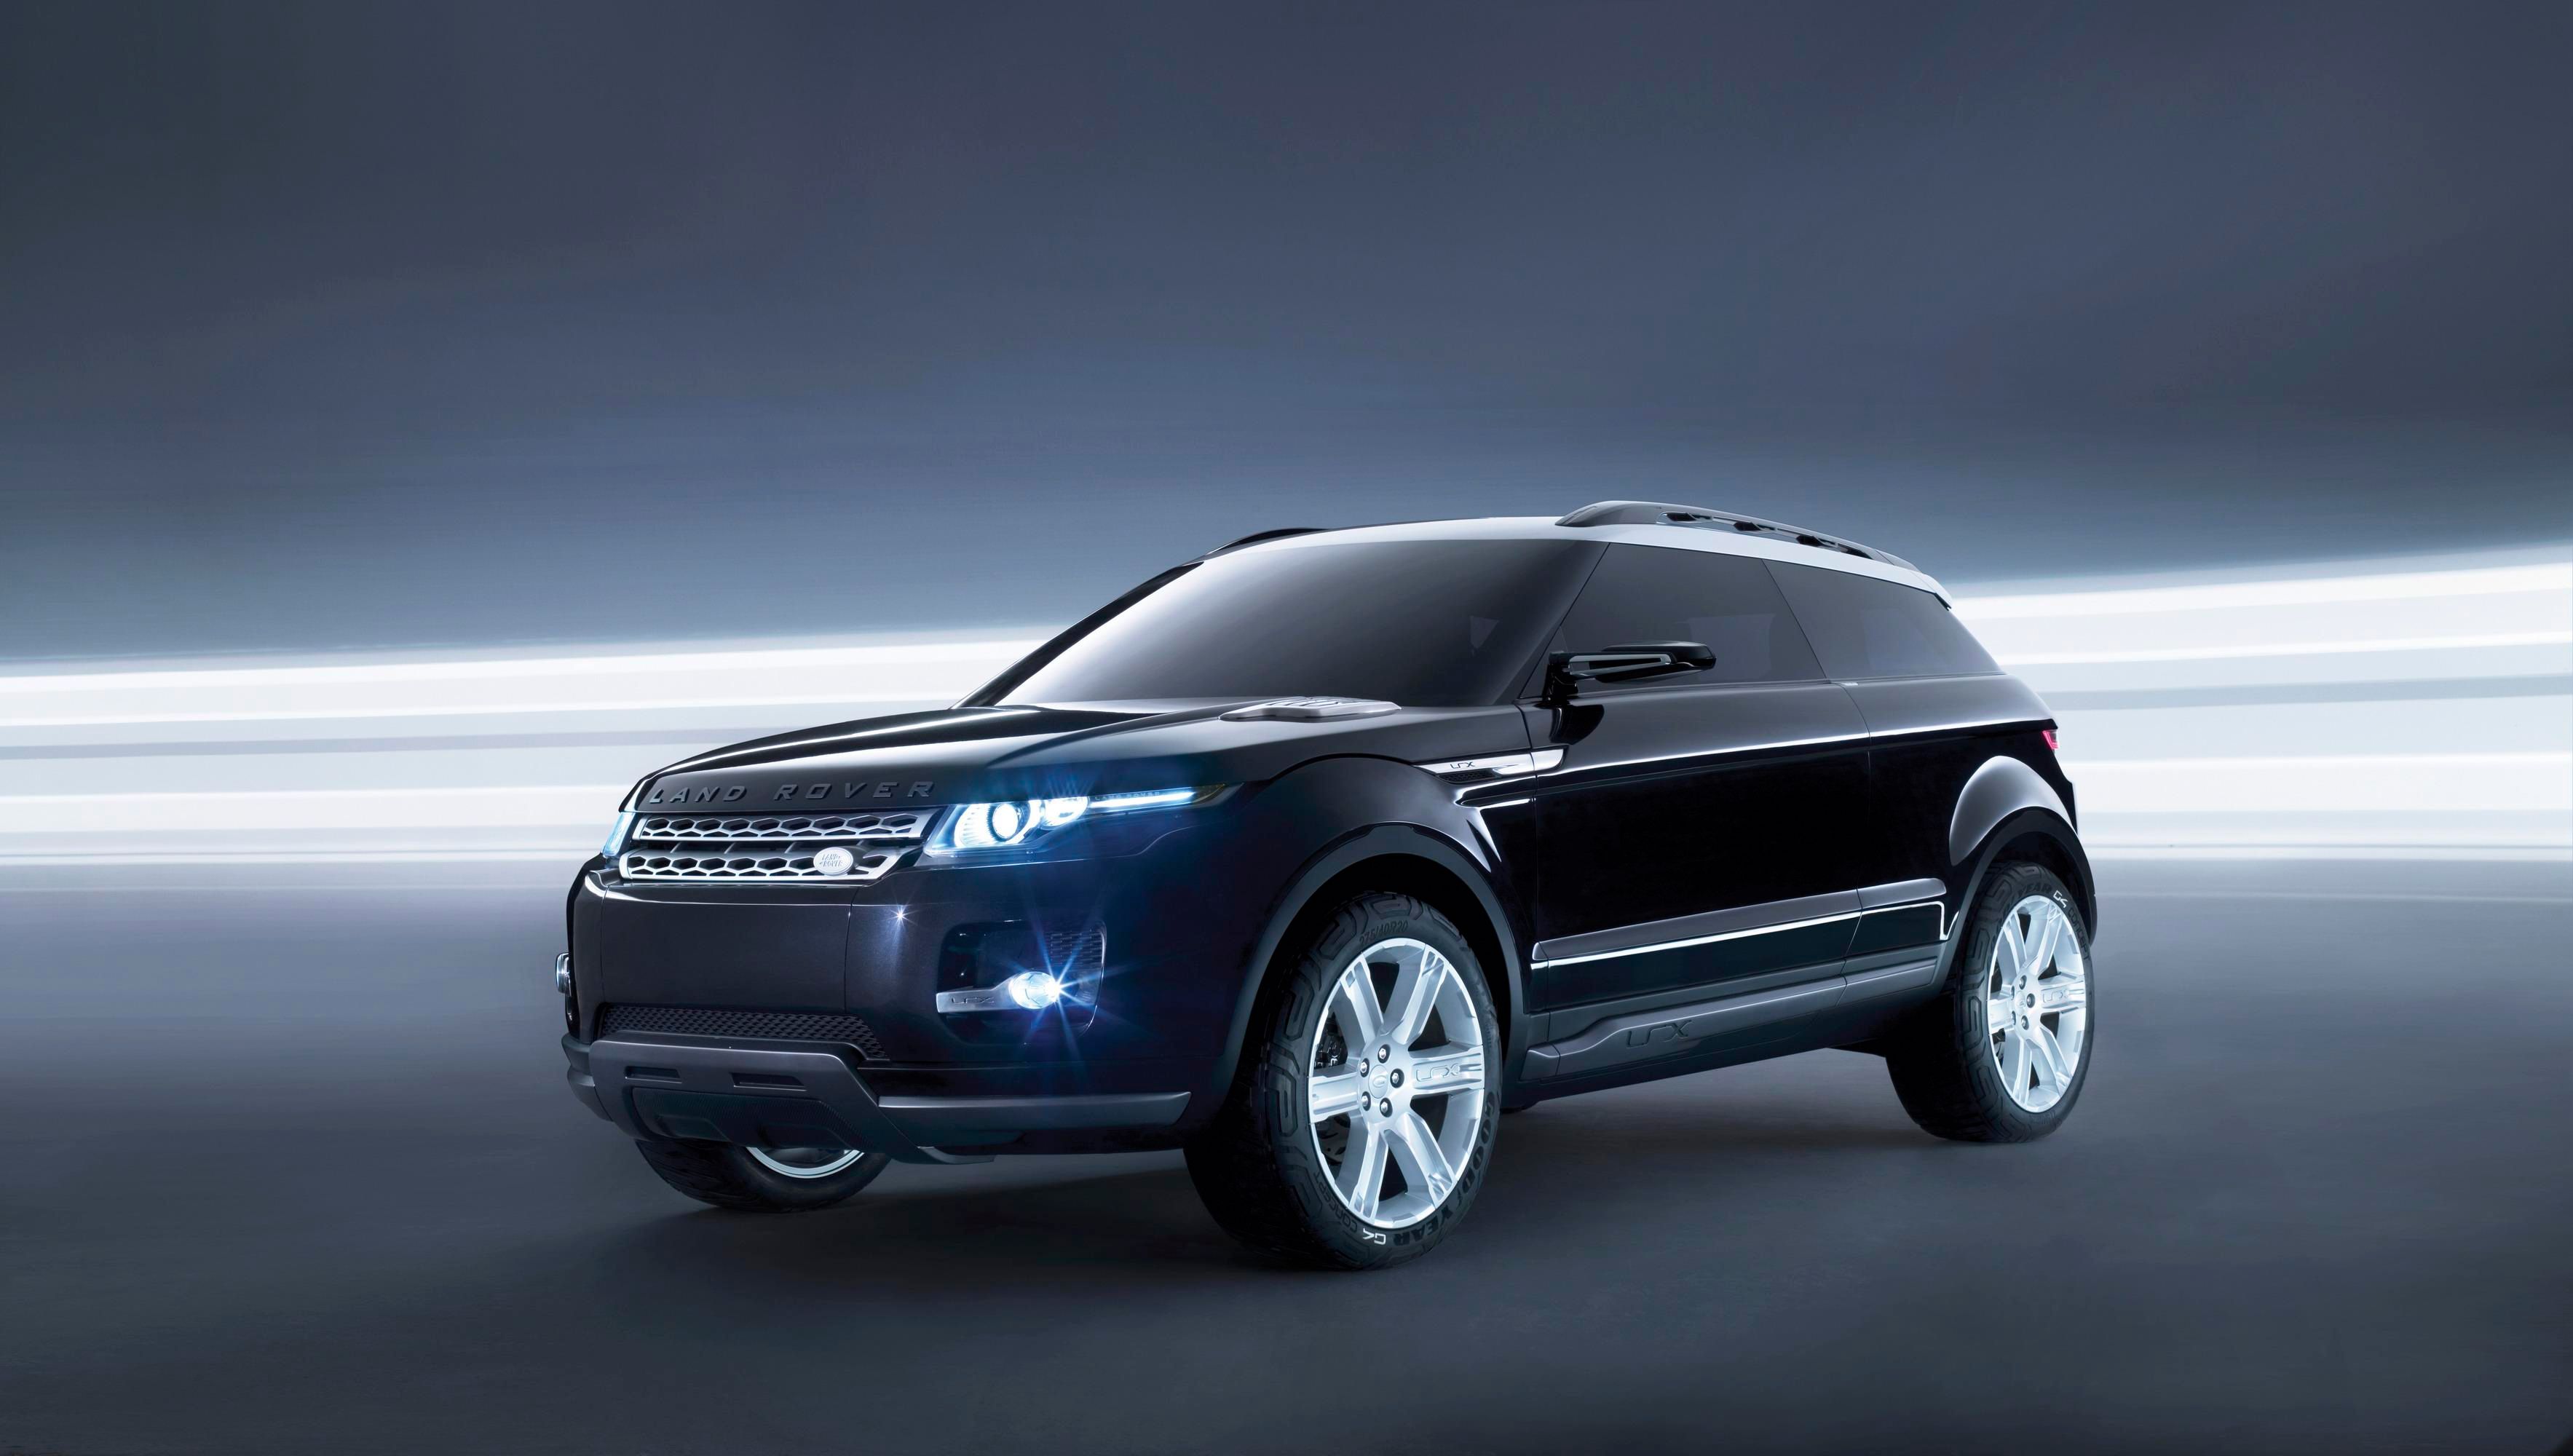 2008 Land Rover LRX Concept Black & Silver